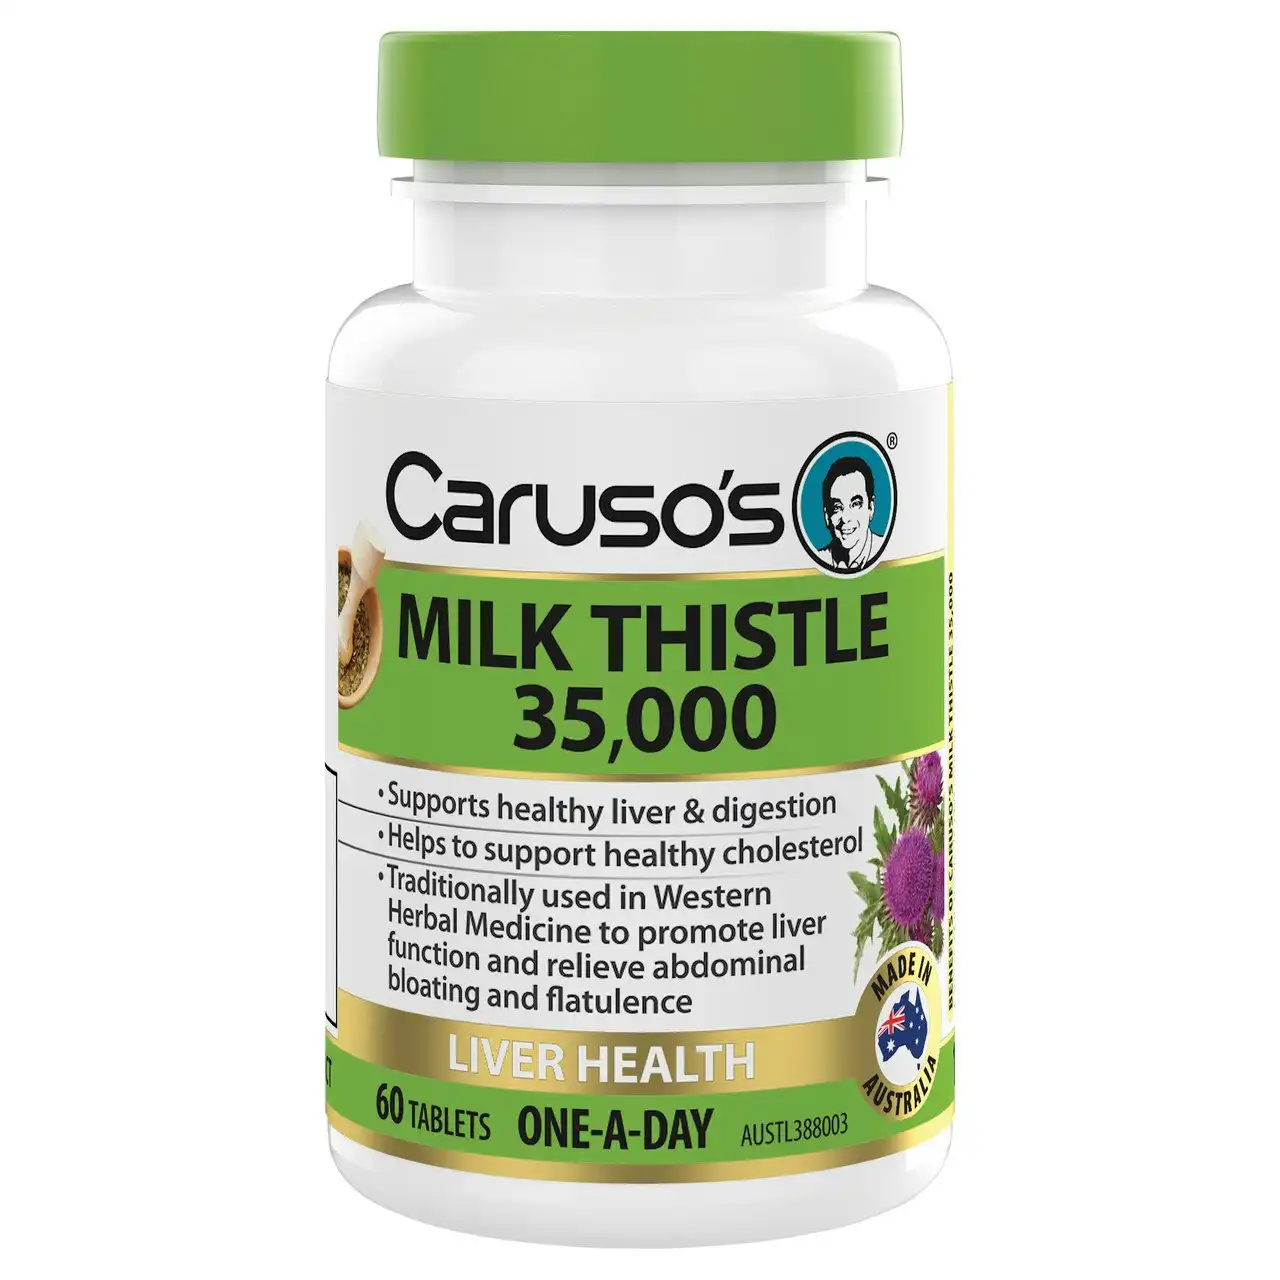 Caruso's Milk Thistle 35,000